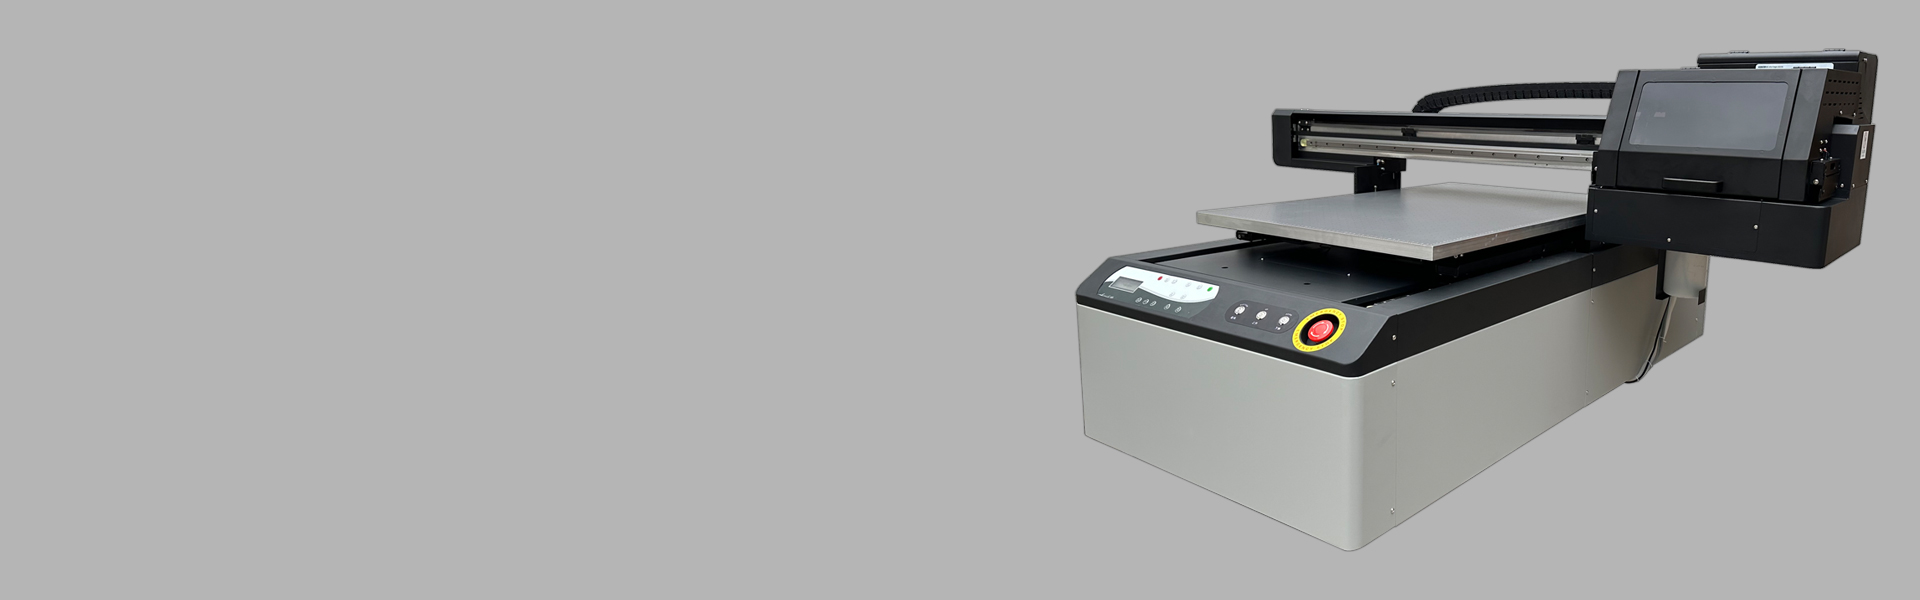 Impresora UV de cama plana UV6090-I3200 U1